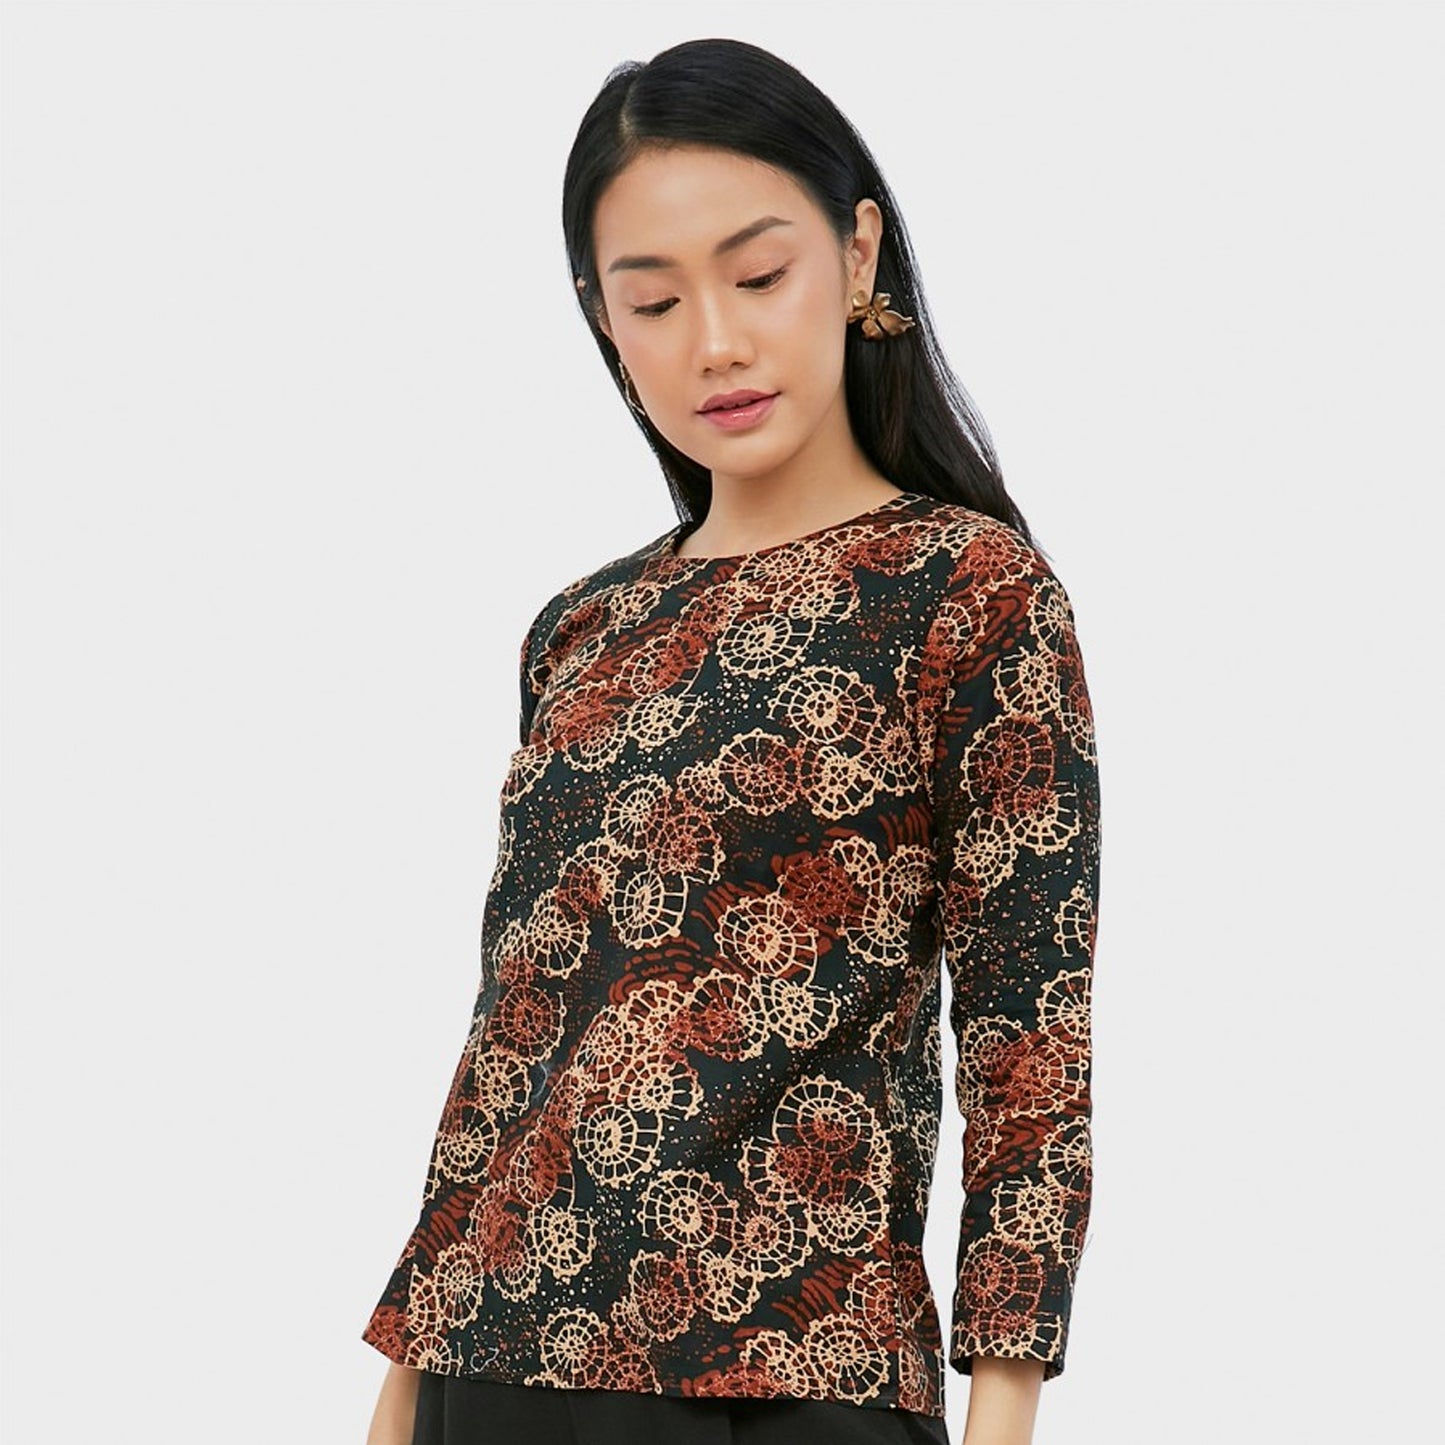 Fashion Forward: Dava Women's Batik Blouse for Modern Women, Batik Dress, Batik, Boho Dress, Ethnic Dress,Women Dress